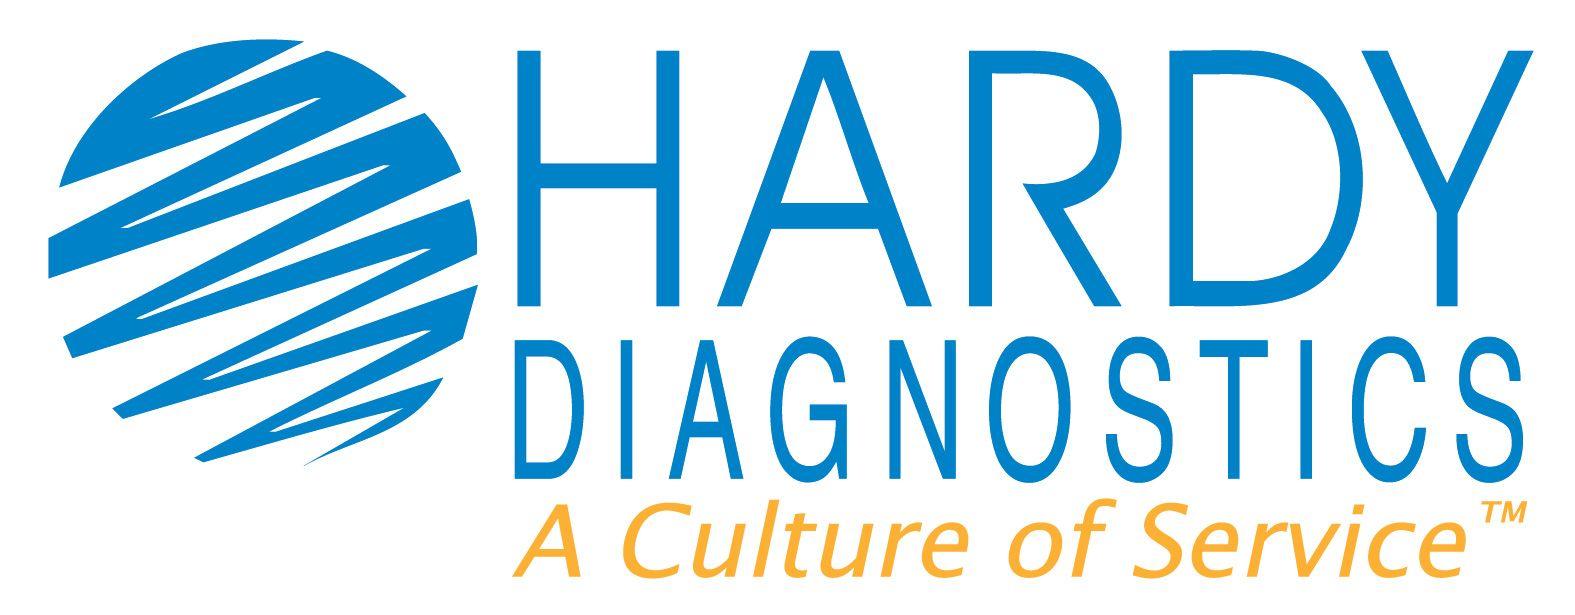 Hardy Logo - HARDY Logo with CoS - Hardy Diagnostics